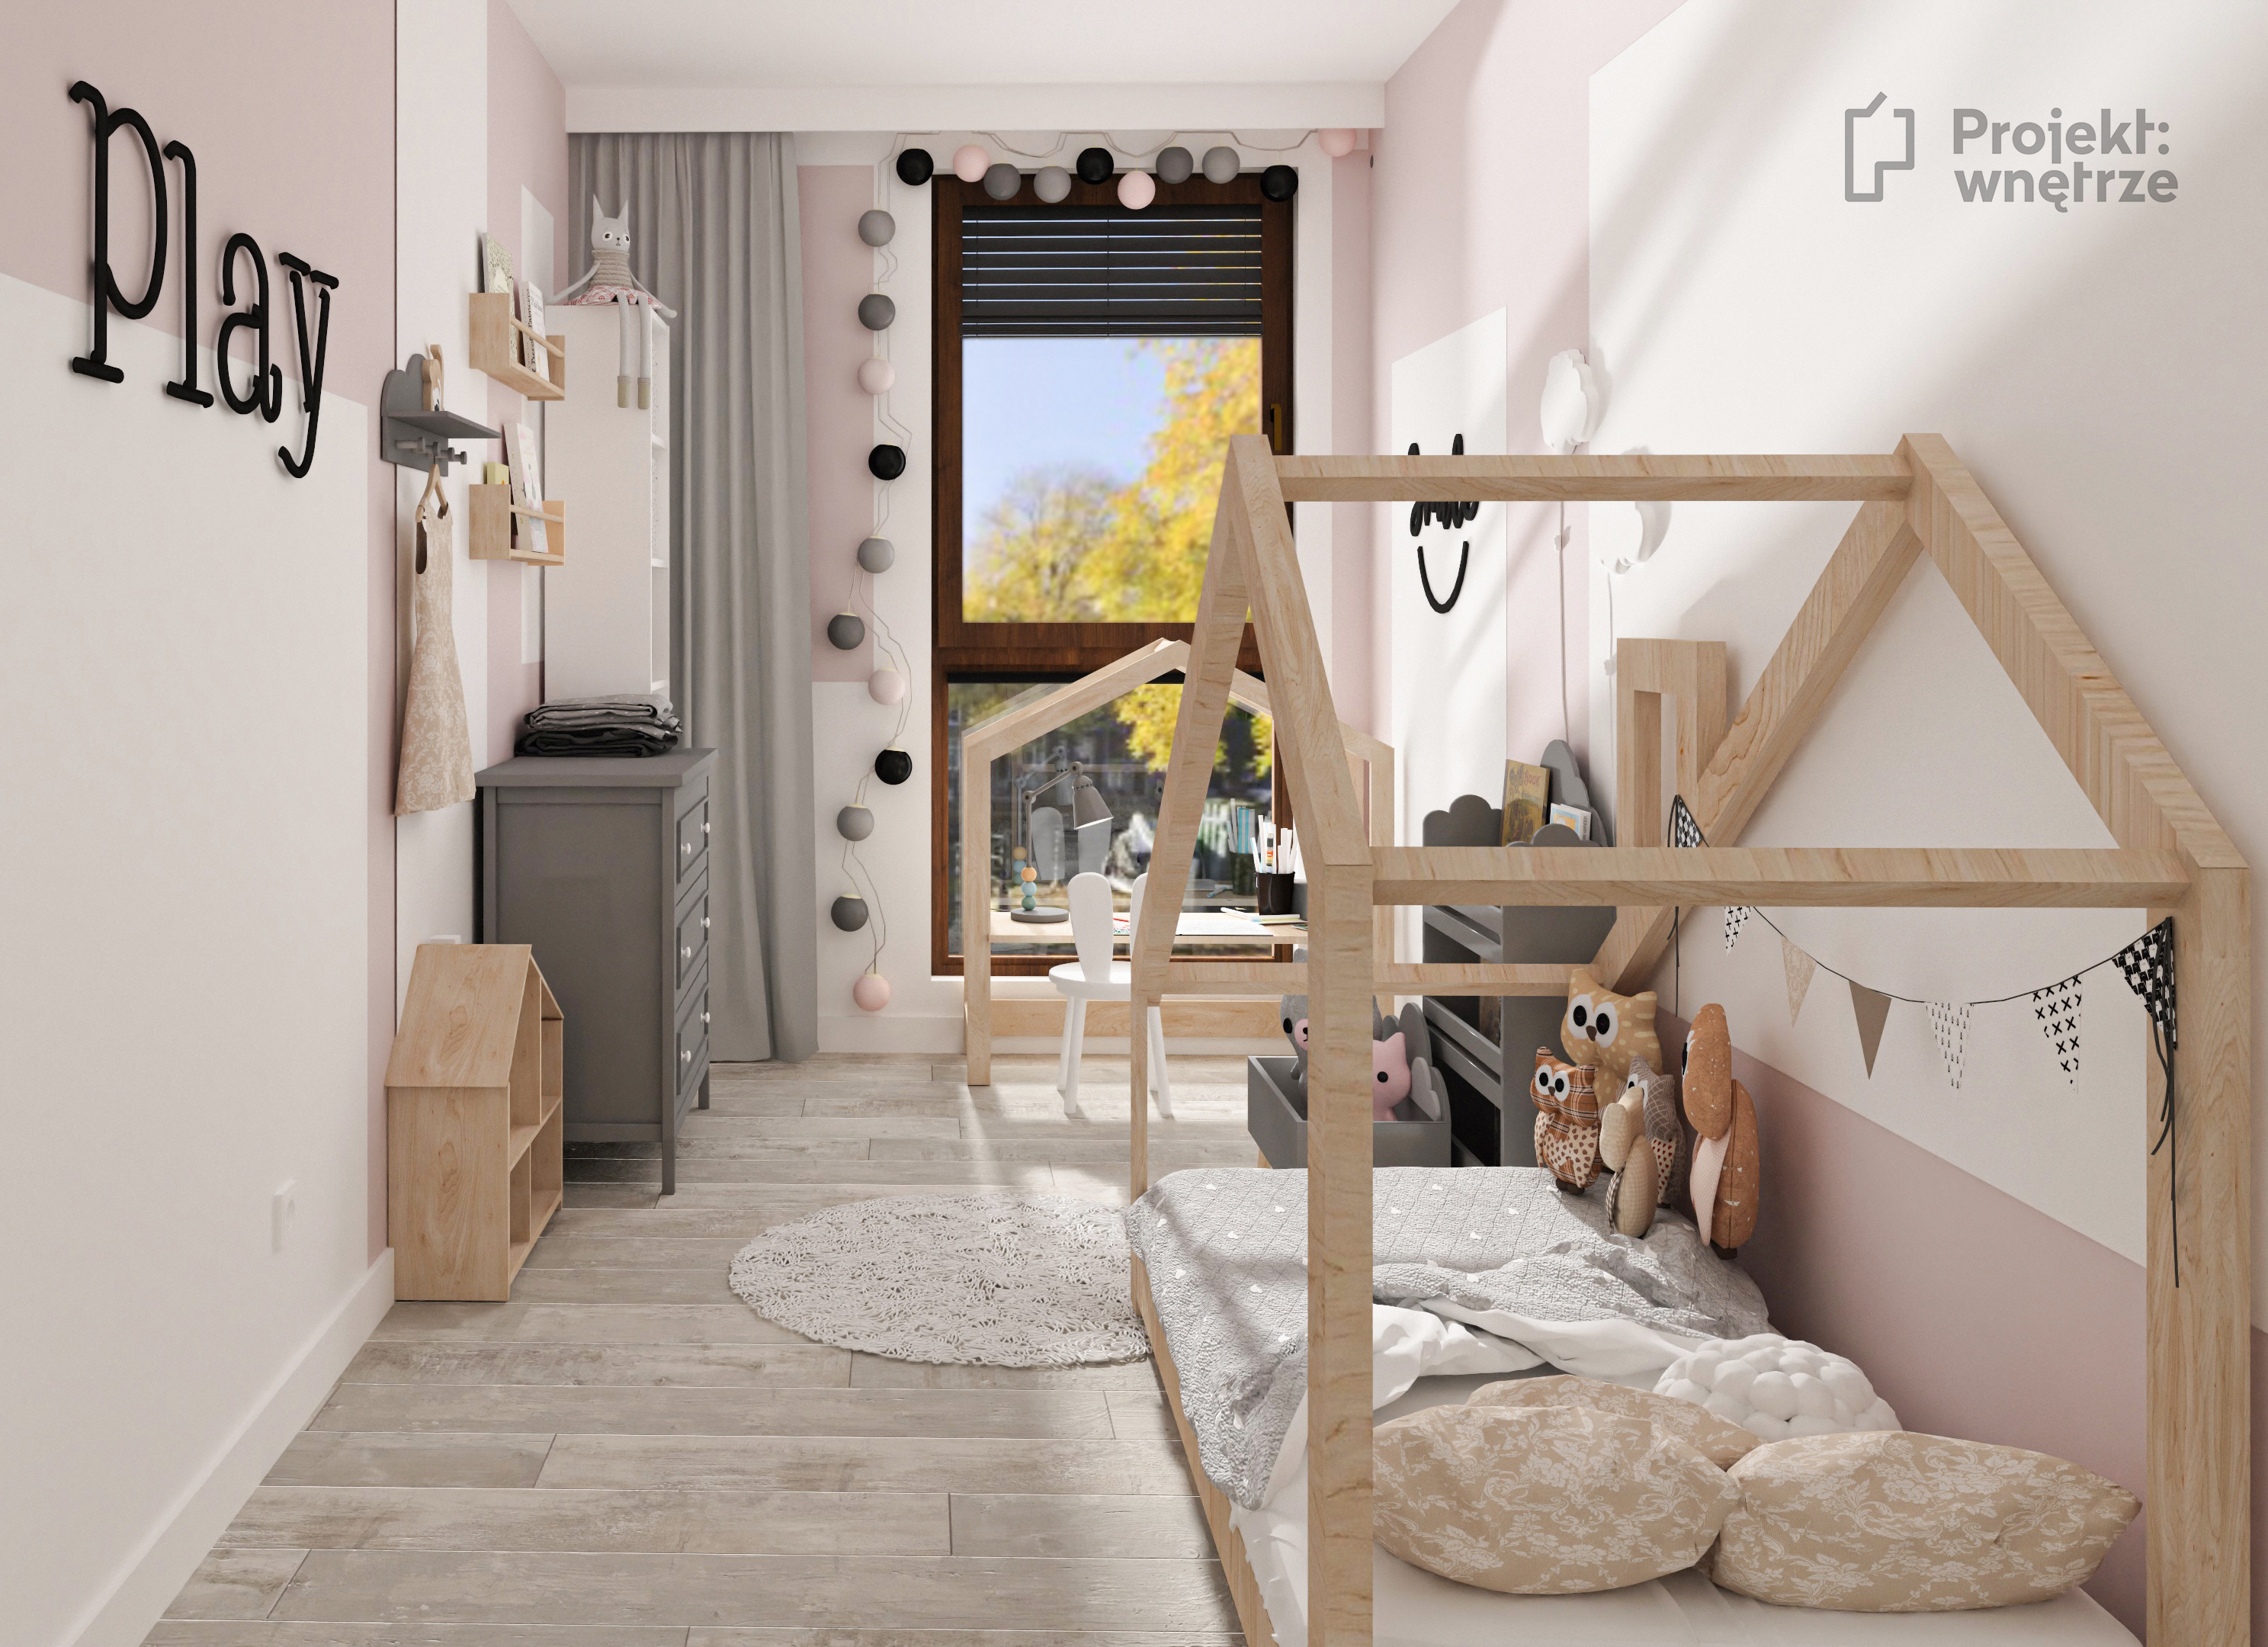 Pokój dla dziewczynki róż szarość biel łóżko domek - projekt pokoju dziecięcego - www.projektwnetrze.com.pl